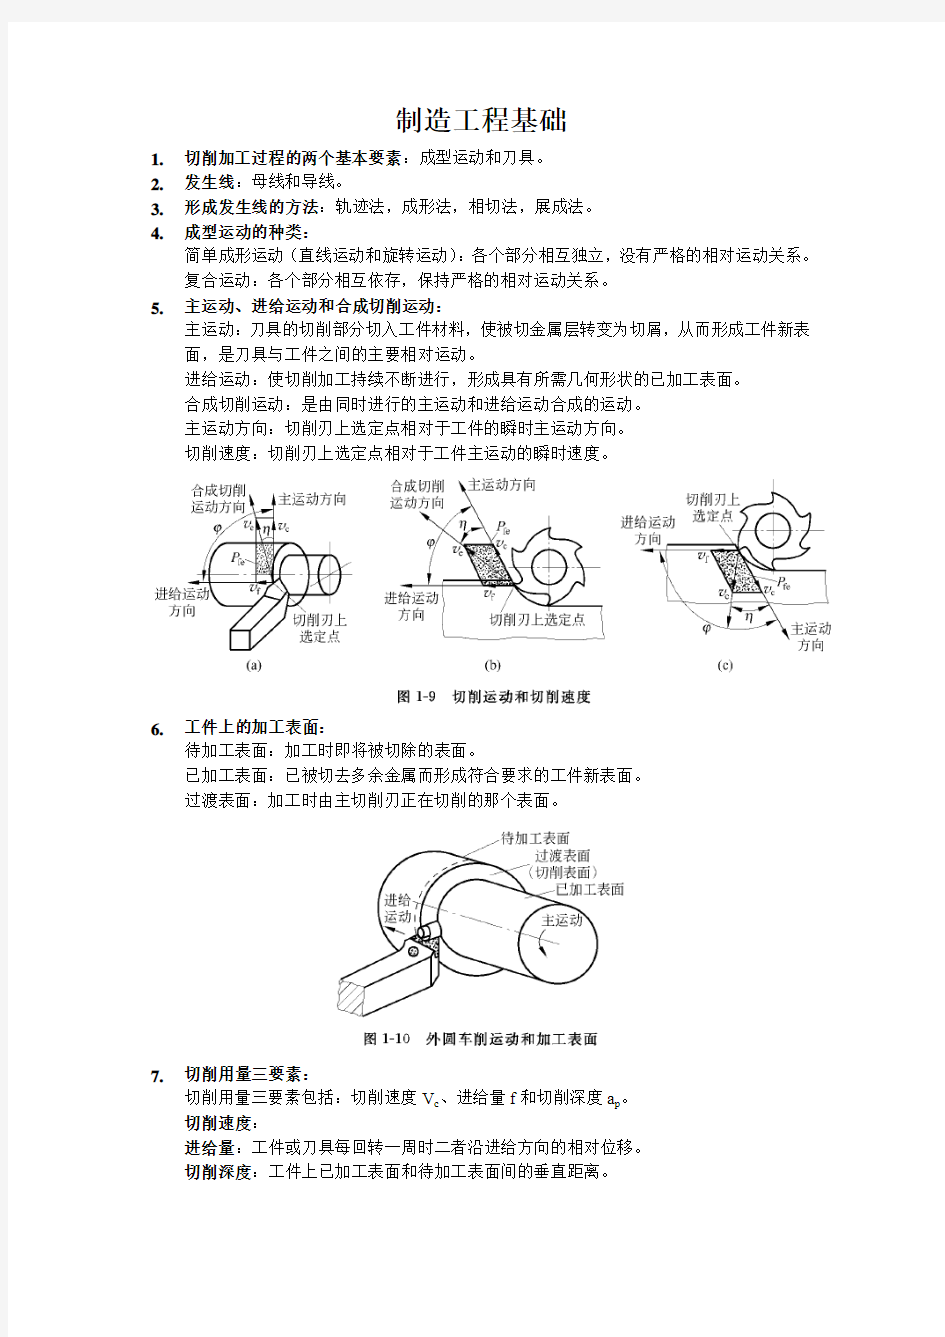 天津工业大学机械制造工程基础复习资料(全部)